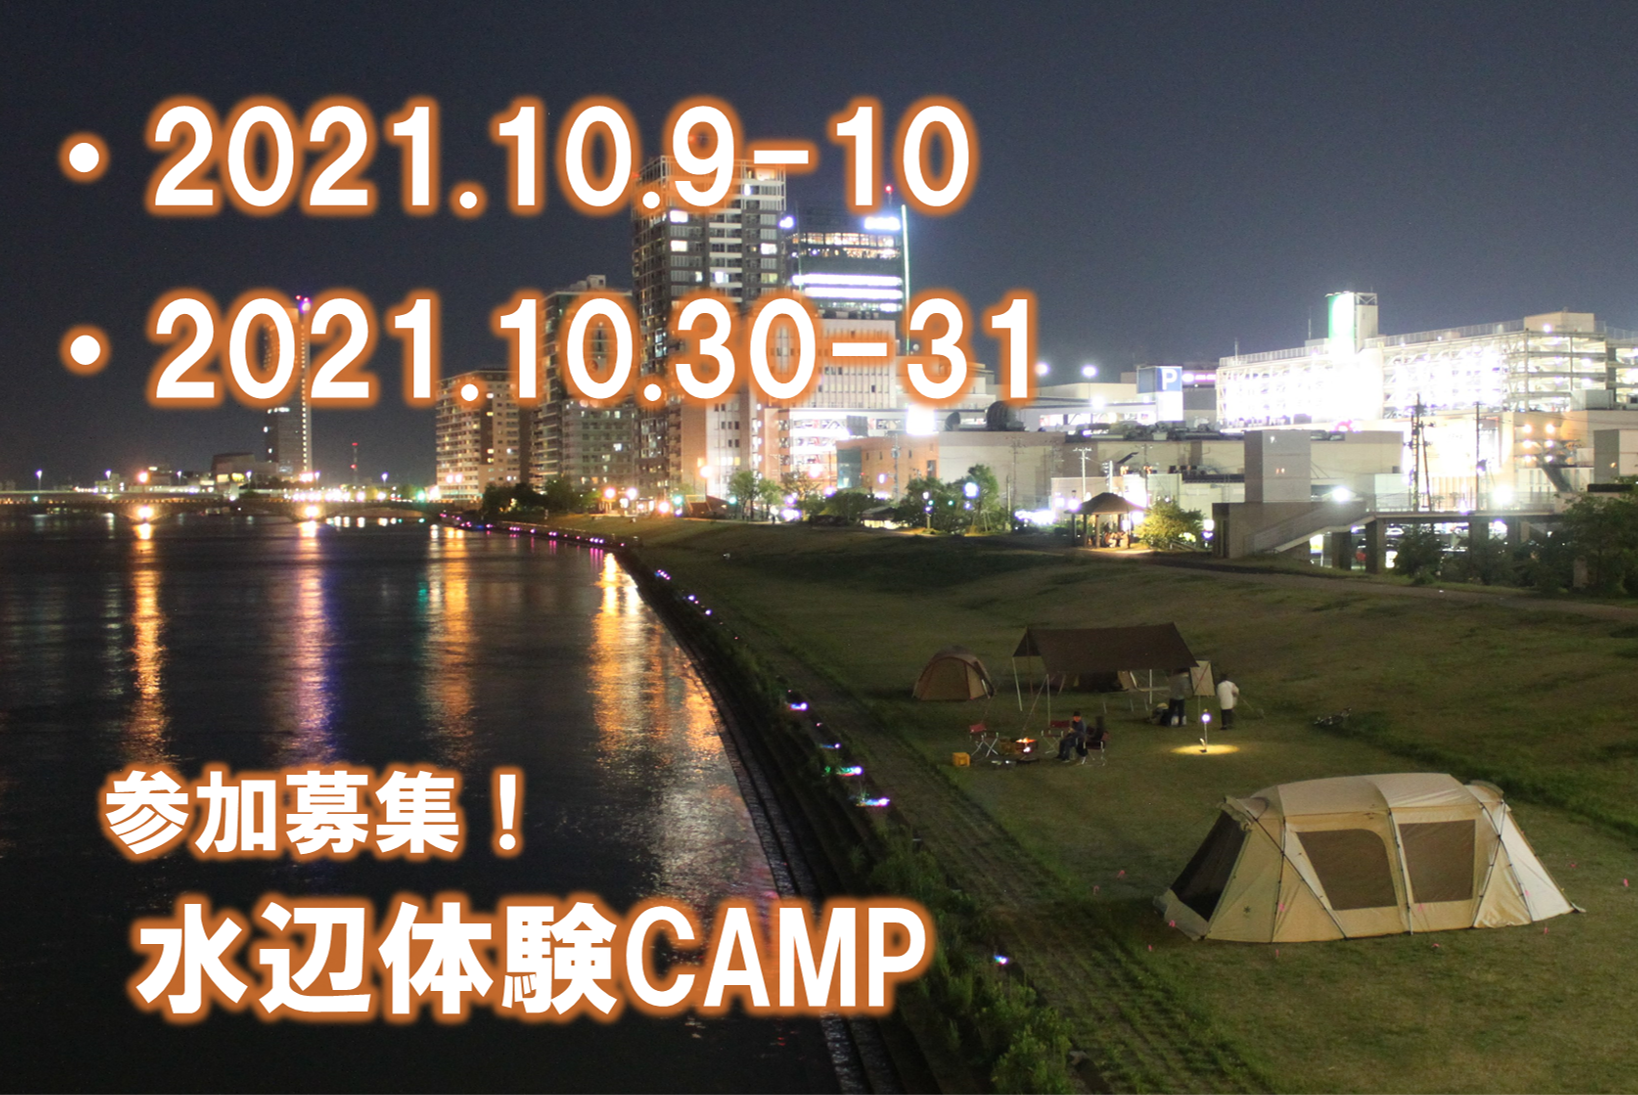 水辺体験キャンプ2021 10月開催のお知らせ